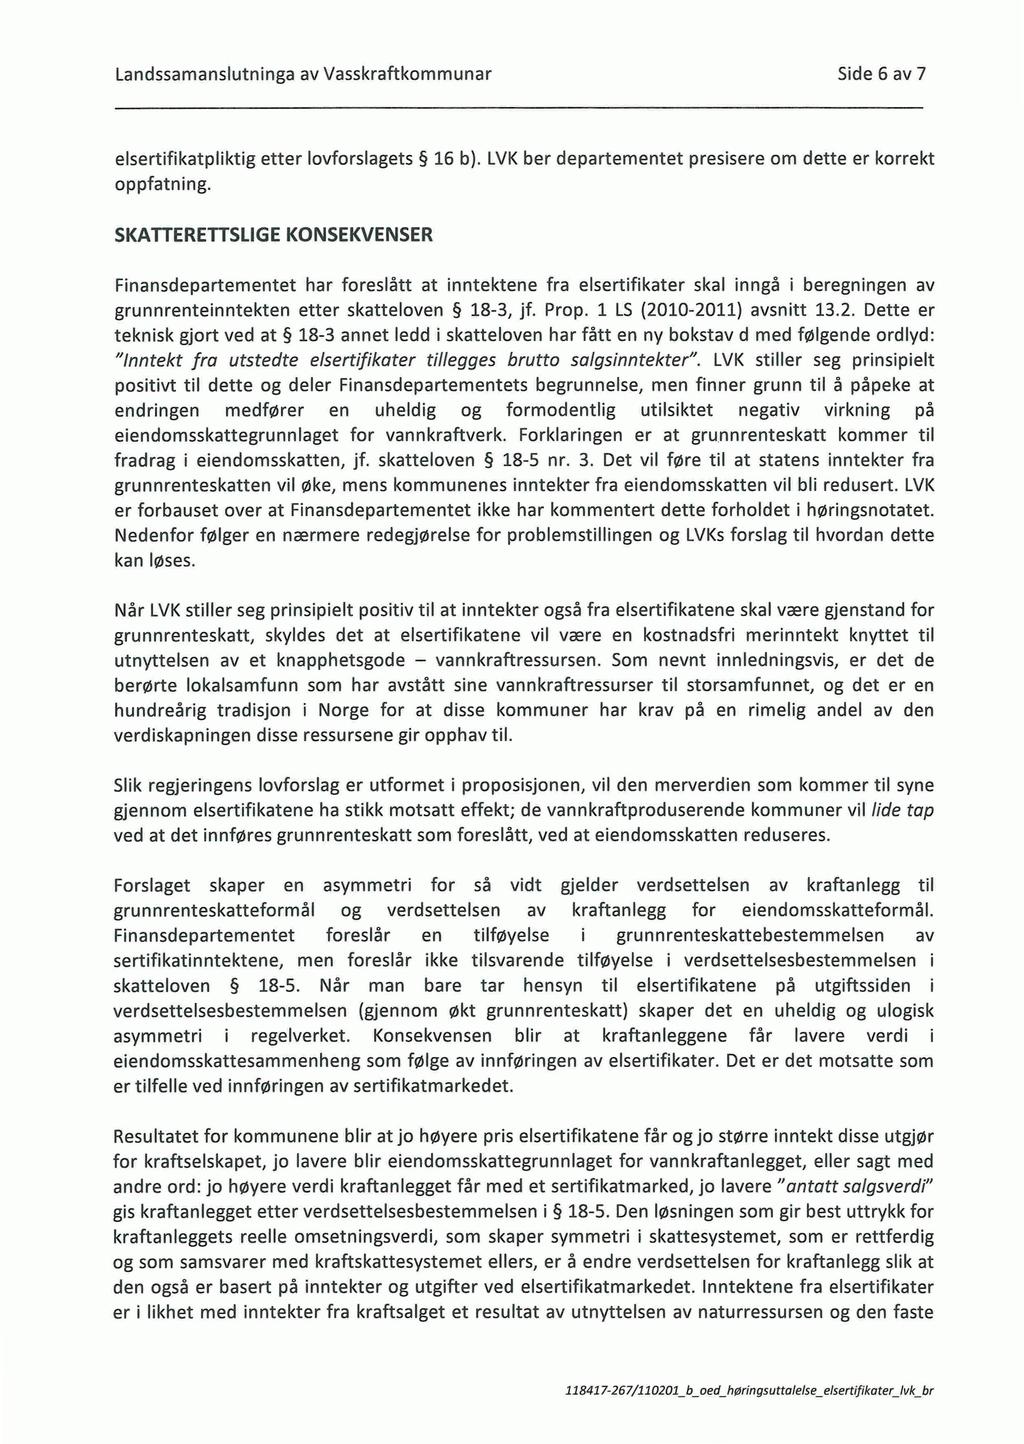 Landssamanslutninga av Vasskraftkommunar Side 6 av 7 elsertifikatpliktig etter lovforslagets 16 b). LVK ber departementet presisere om dette er korrekt oppfatning.